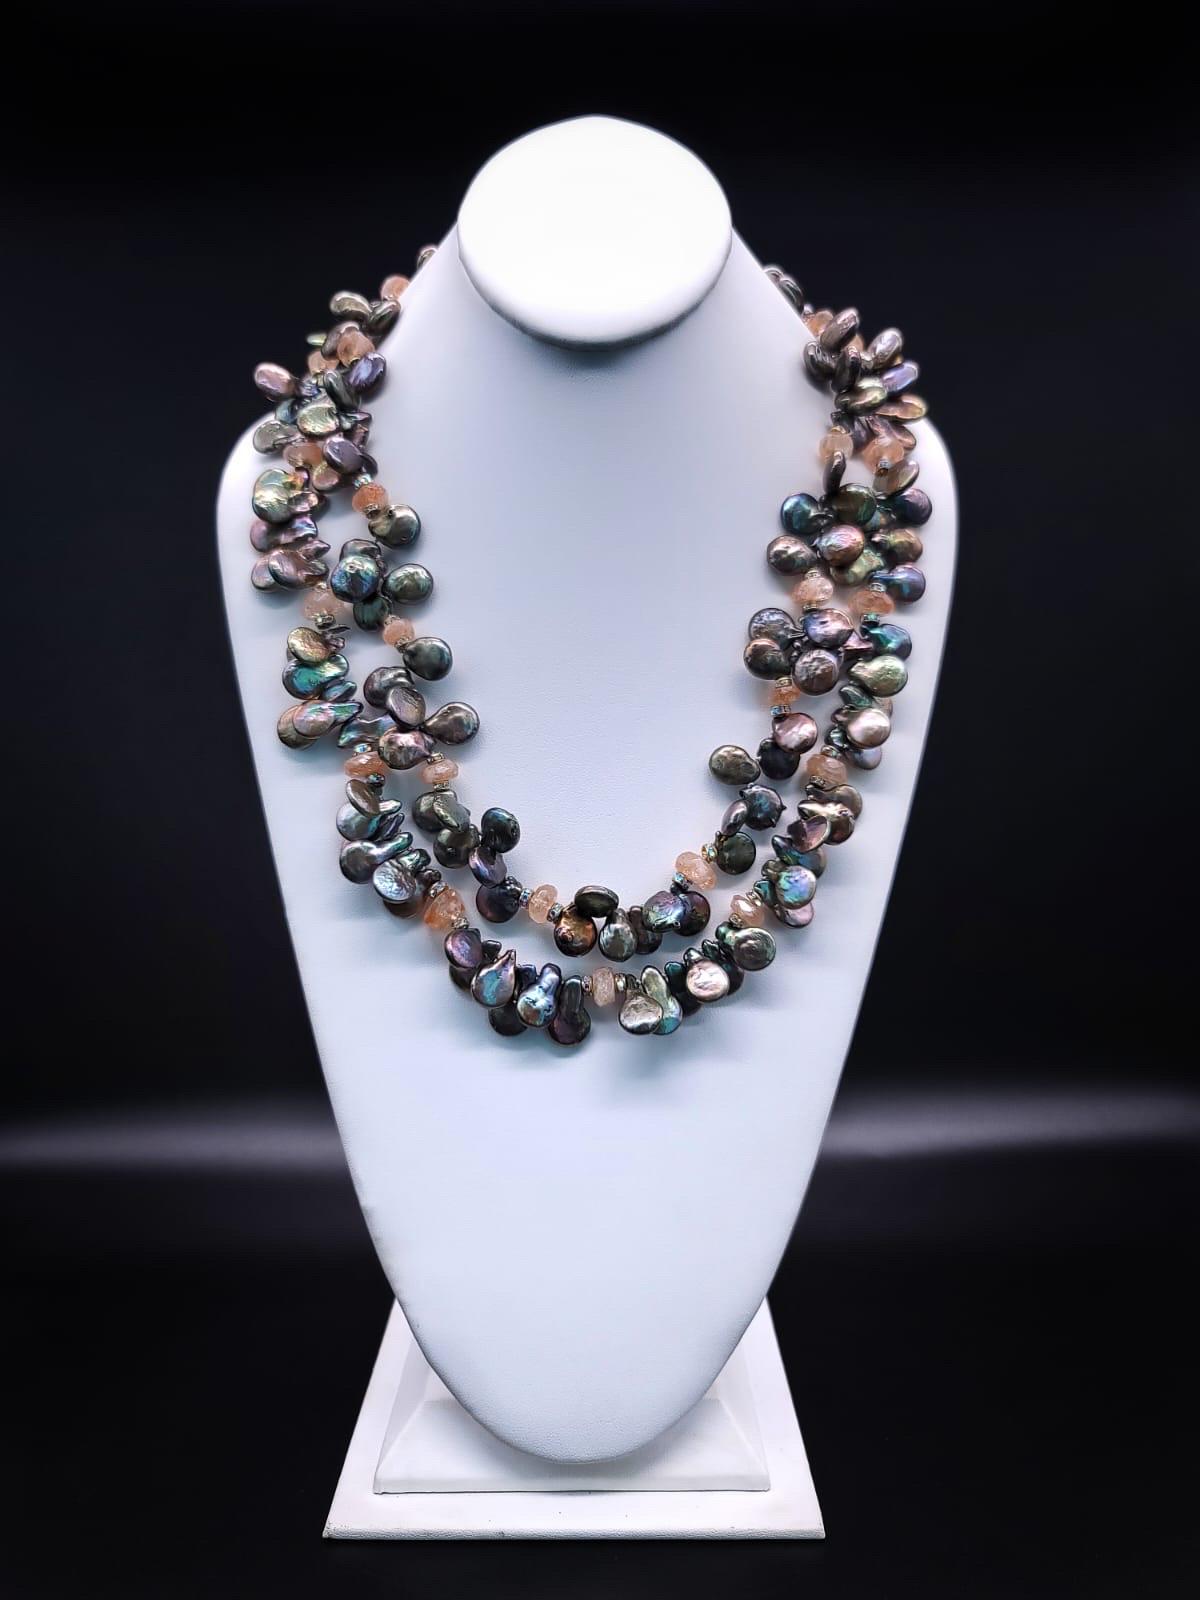 Einzigartig

Gönnen Sie sich zeitlose Eleganz mit dieser exquisiten, zweisträngigen, glänzenden Halskette aus grauer Perle mit einem faszinierenden, handbemalten russischen Miniaturverschluss. Die Perlenkette ist mit facettierten, sanft gefärbten,